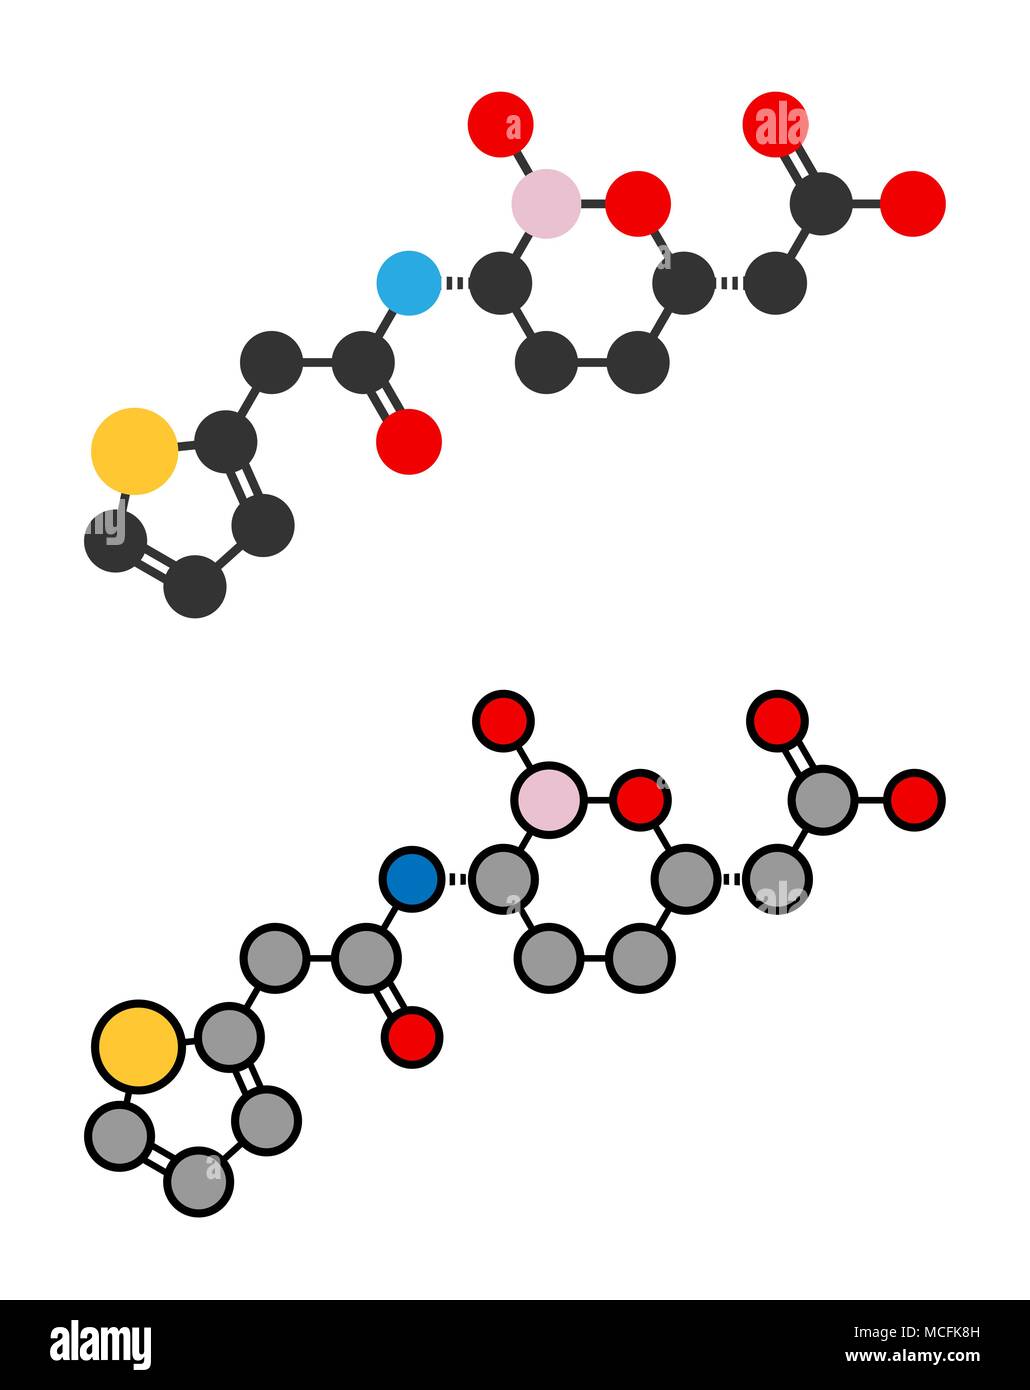 Vaborbactam molecola di farmaco. Beta-lattamasi inibitore co-somministrato con meropenem per bloccare la degradazione di queste ultime da parte di enzimi carbapenemase. Styliz Illustrazione Vettoriale